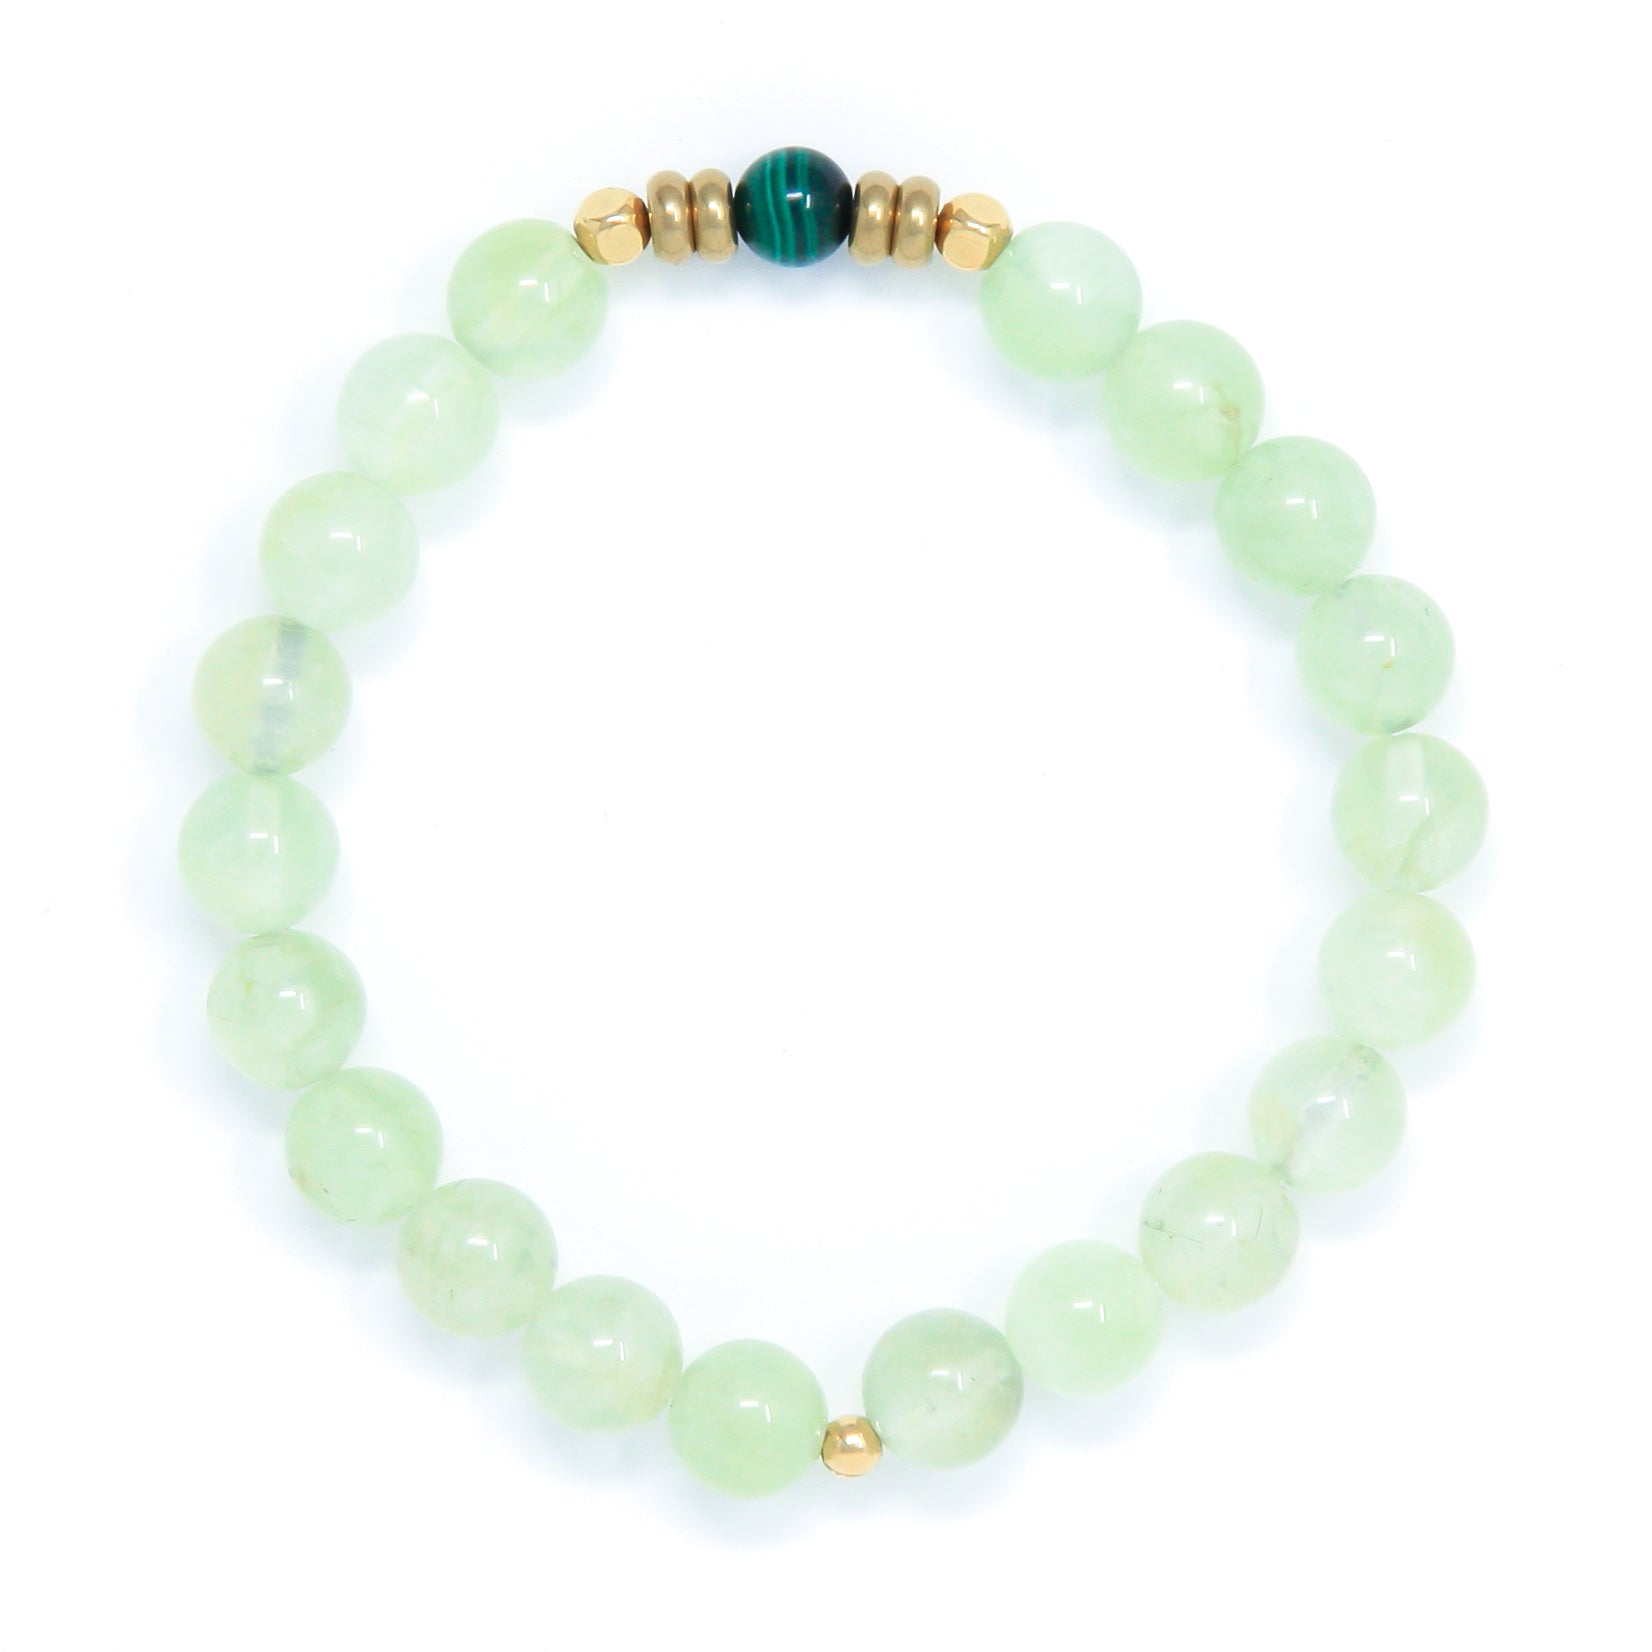 Prehnite Mala Bracelet with Malachite, yoga jewelry